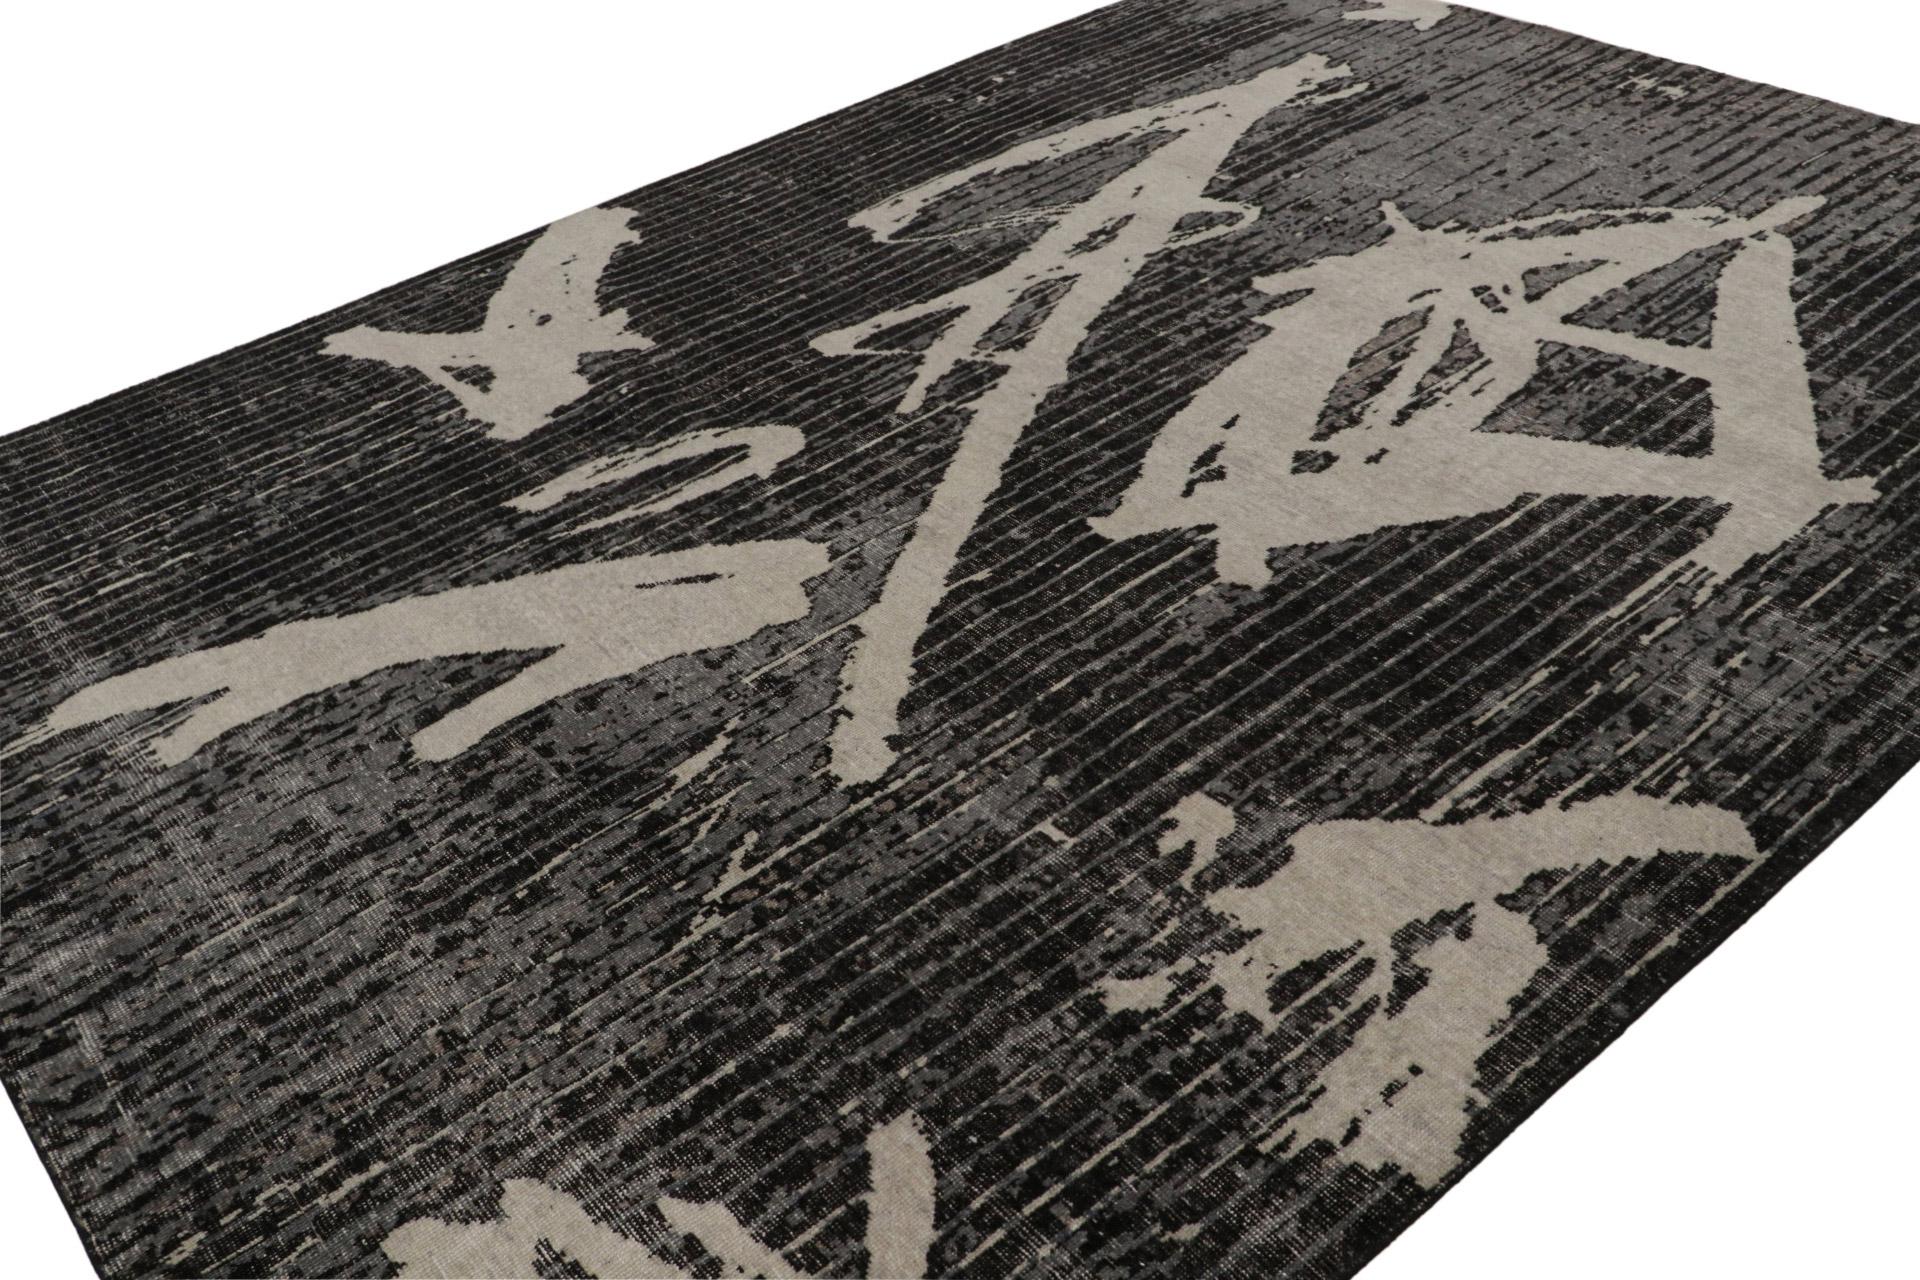 Noué à la main en laine, ce tapis moderne 9x12 est un nouvel ajout à la Collection Homage de Rug & Kilim.

Sur le Design : 

Un tapis noué à la main qui allie un motif géométrique moderne et un style vieilli, appartenant à la Collection Homage de